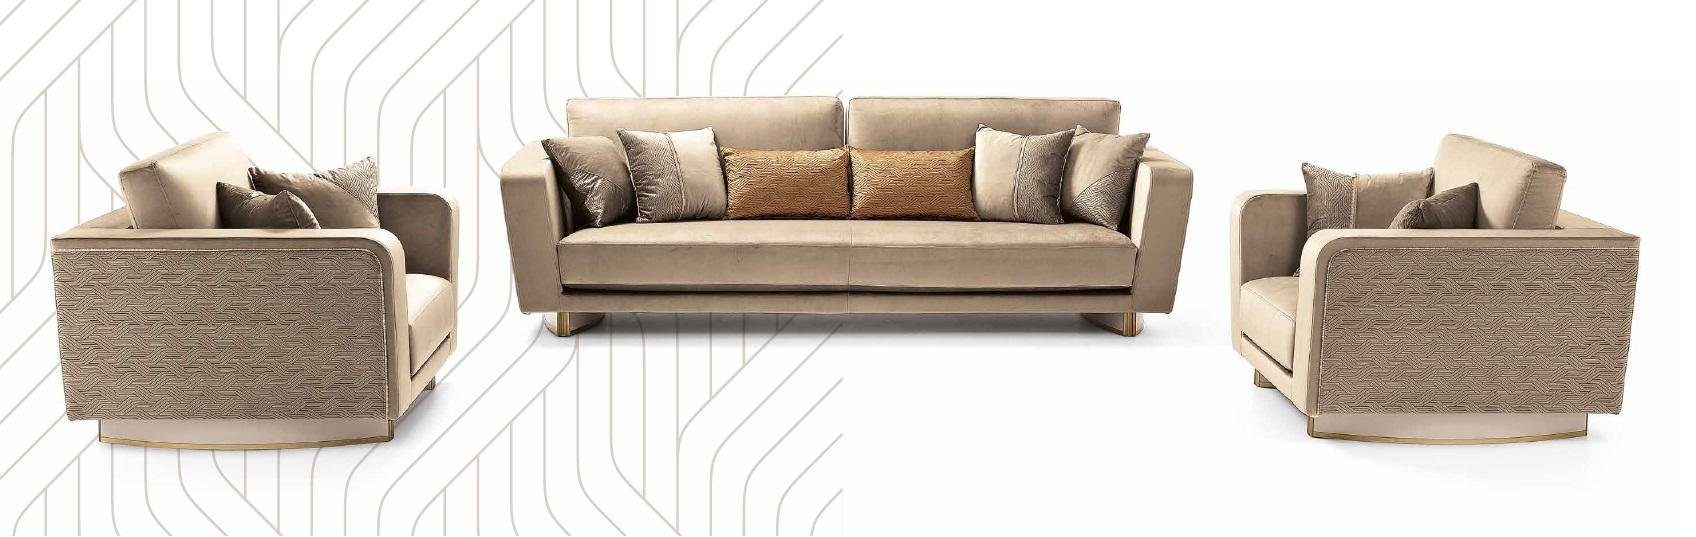 JVmoebel Sofa Sofagarnitur Luxus Möbel Couch Sofa Polster 3+2 Sitz Couchen Sofas, Made in Europe